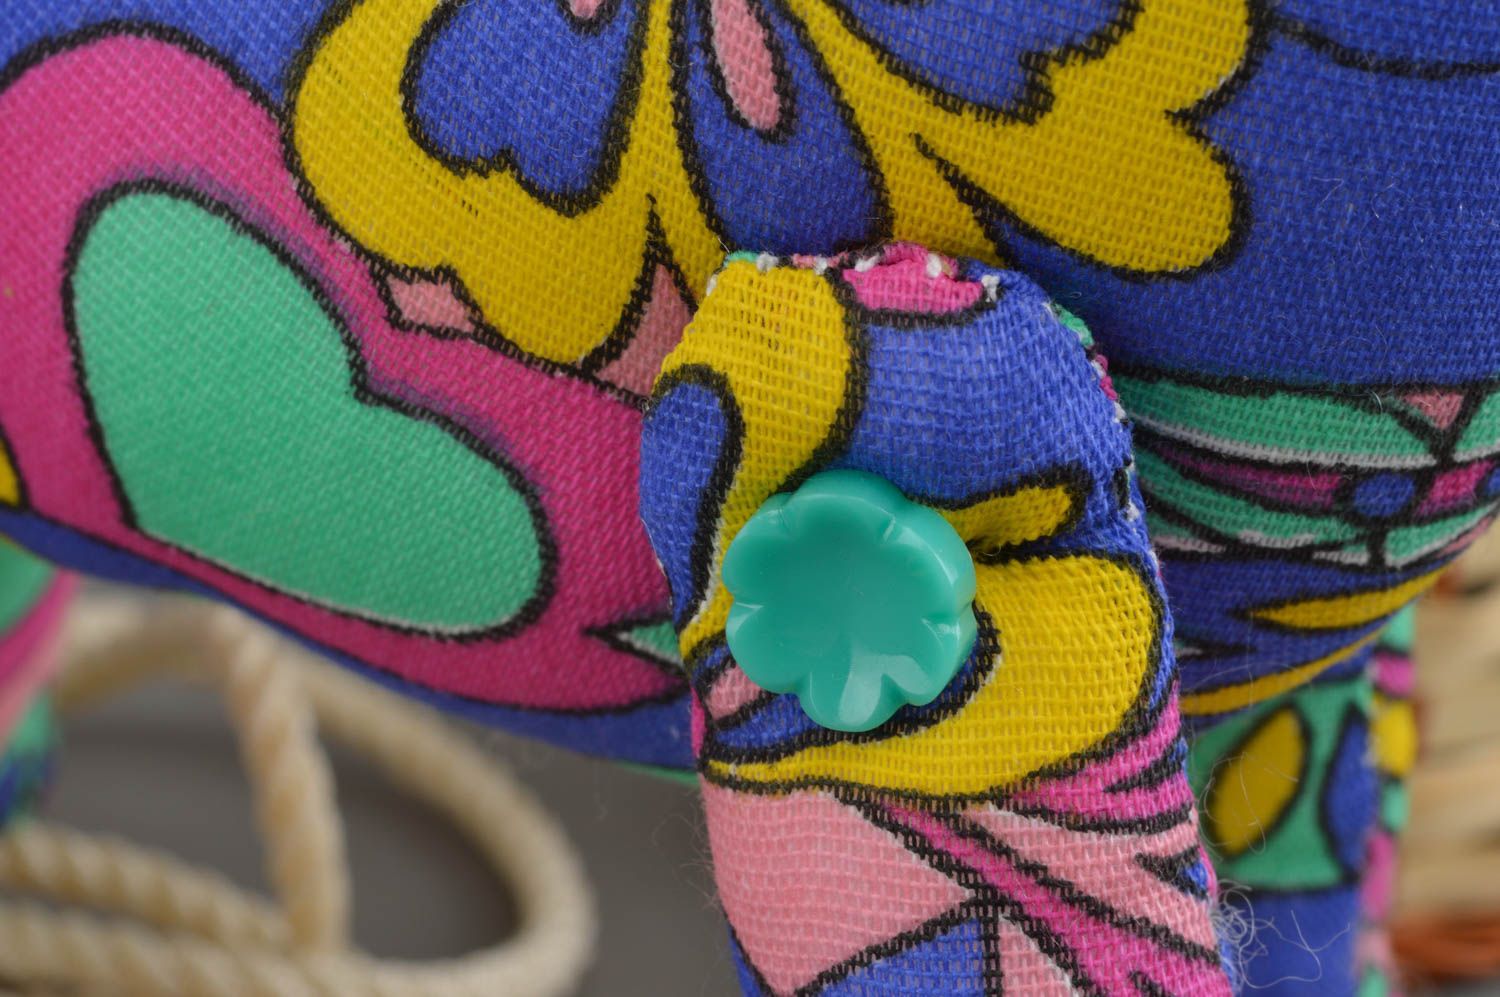 Тканевая игрушка в виде лошадка разноцветная яркая пестрая смешная ручной работы фото 4